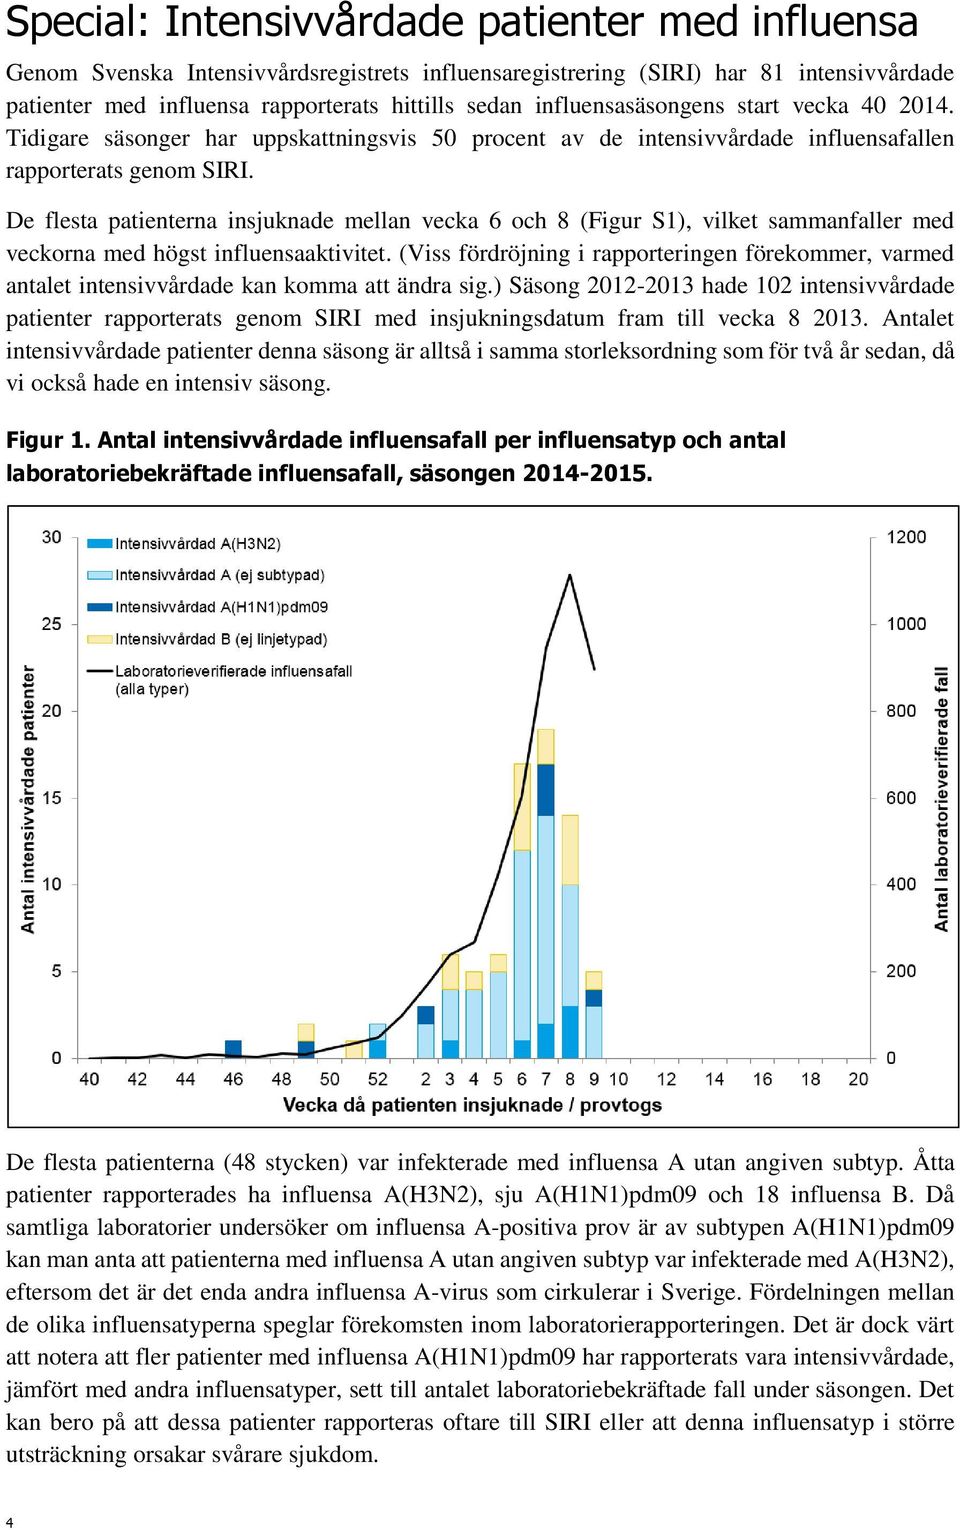 De flesta patienterna insjuknade mellan 6 och 8 (Figur S1), vilket sammanfaller med veckorna med högst influensaaktivitet.